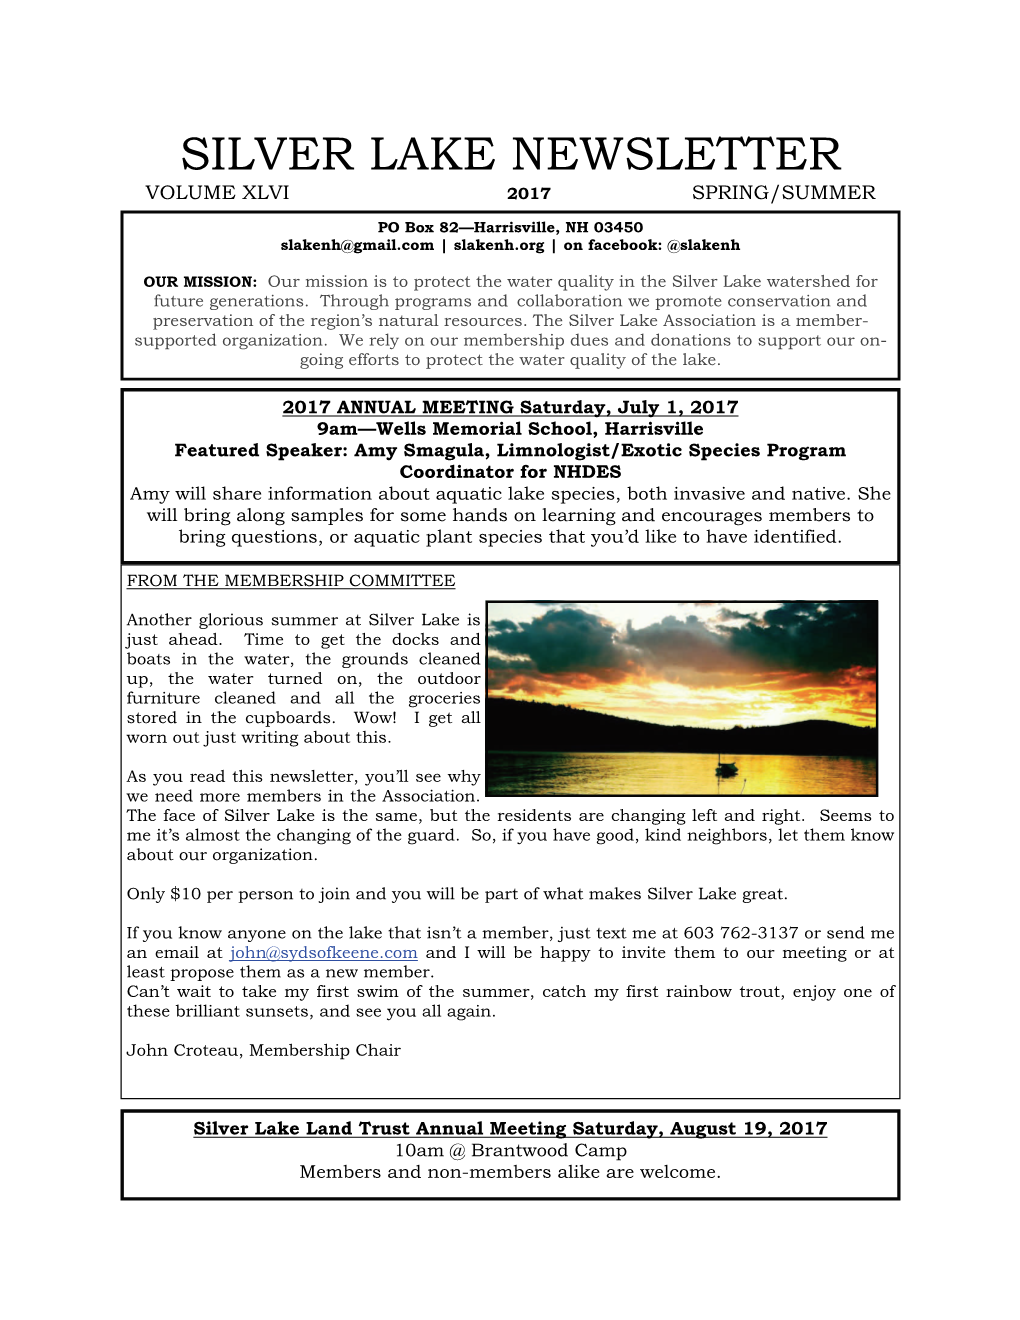 Silver Lake Newsletter Volume Xlvi 2017 Spring/Summer